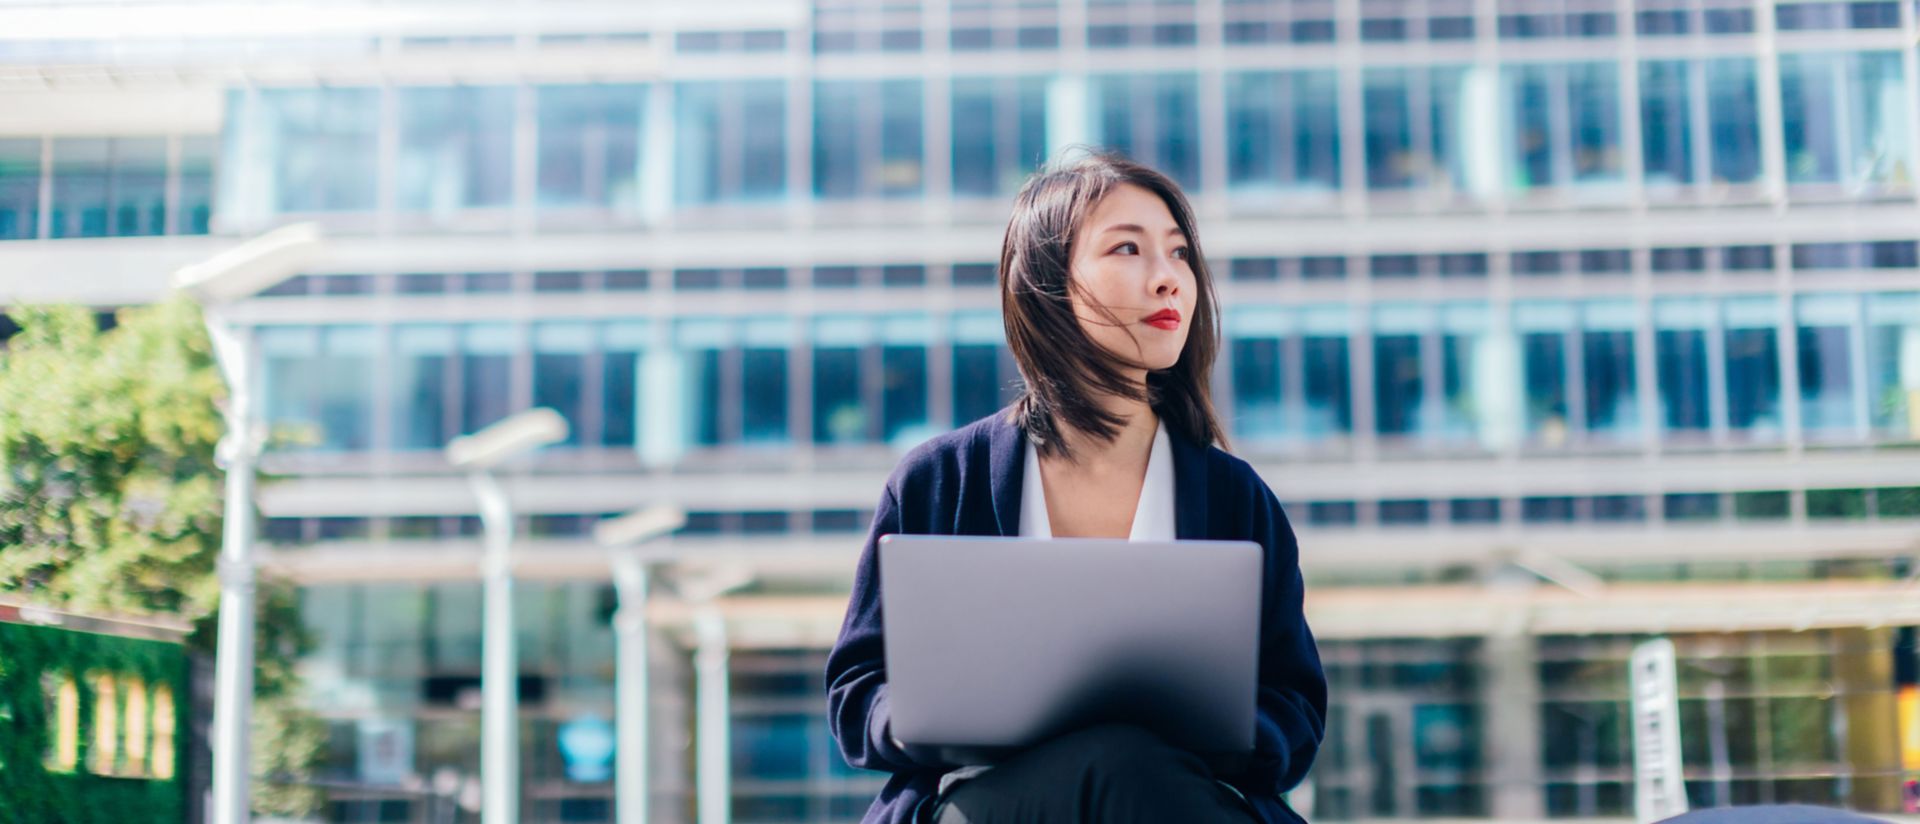 Egy laptopon lévő épület előtt ülő nő képe